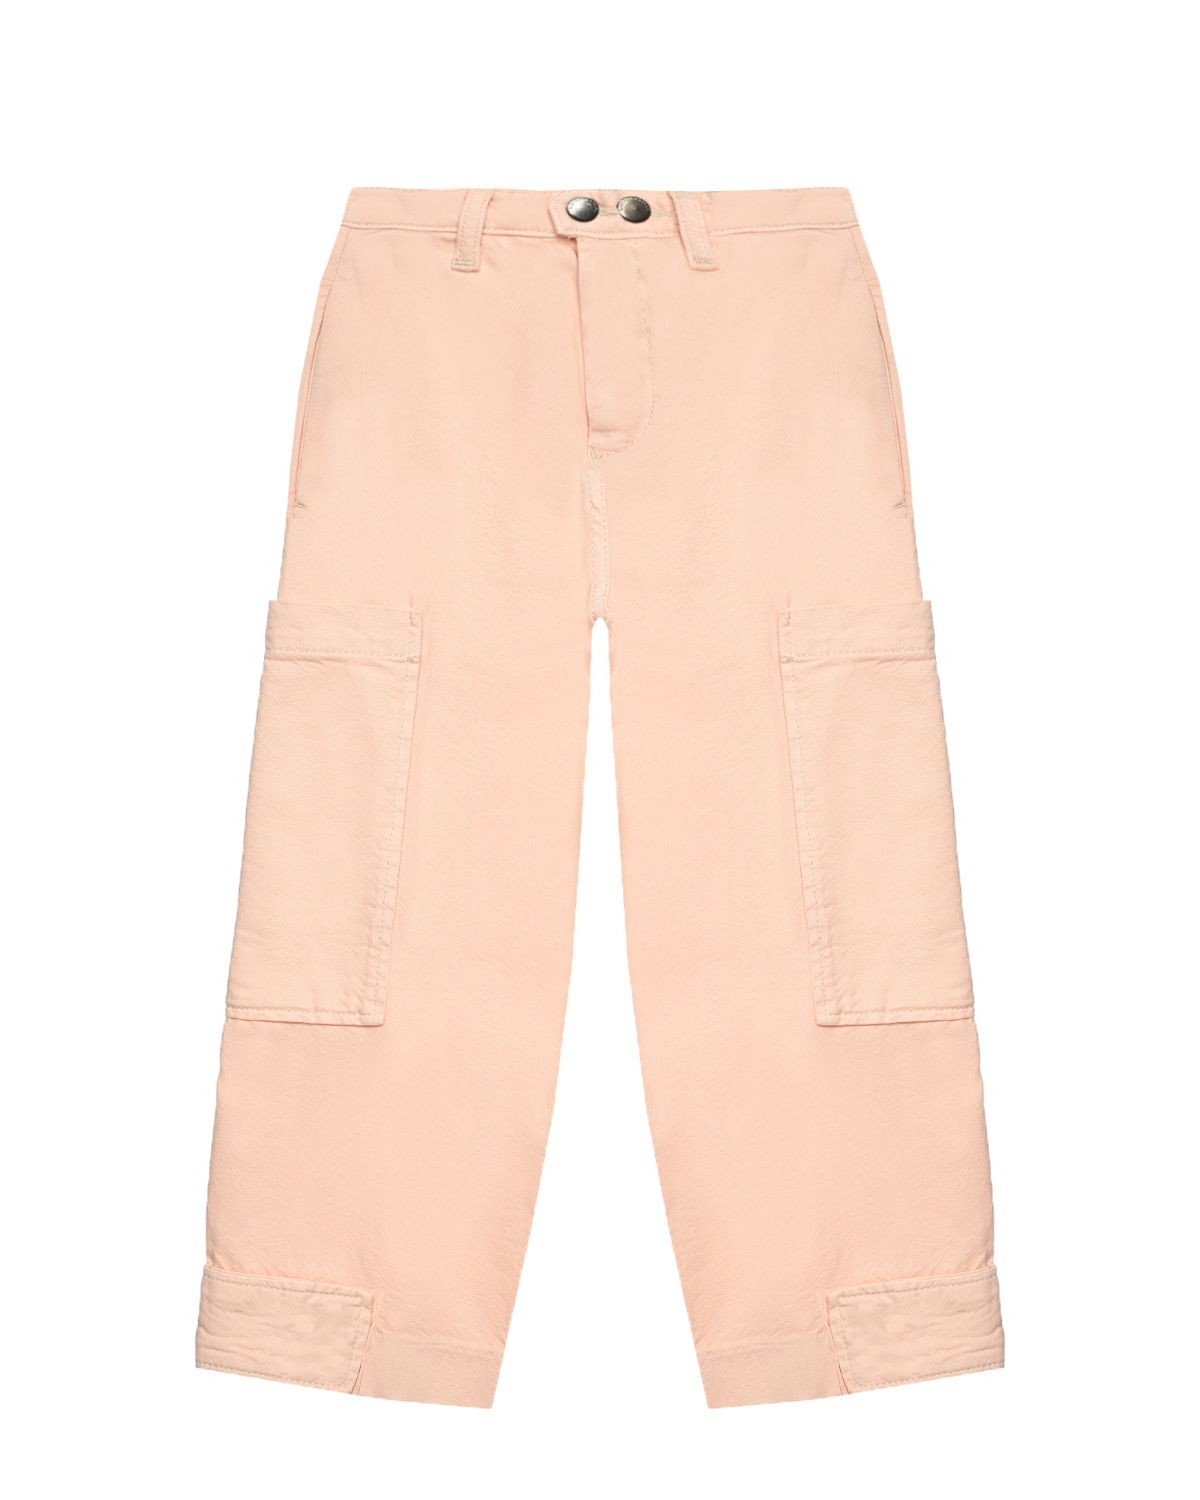 Брюки джинсовые с карманами карго, светло-розовые Emporio Armani, размер 104, цвет розовый